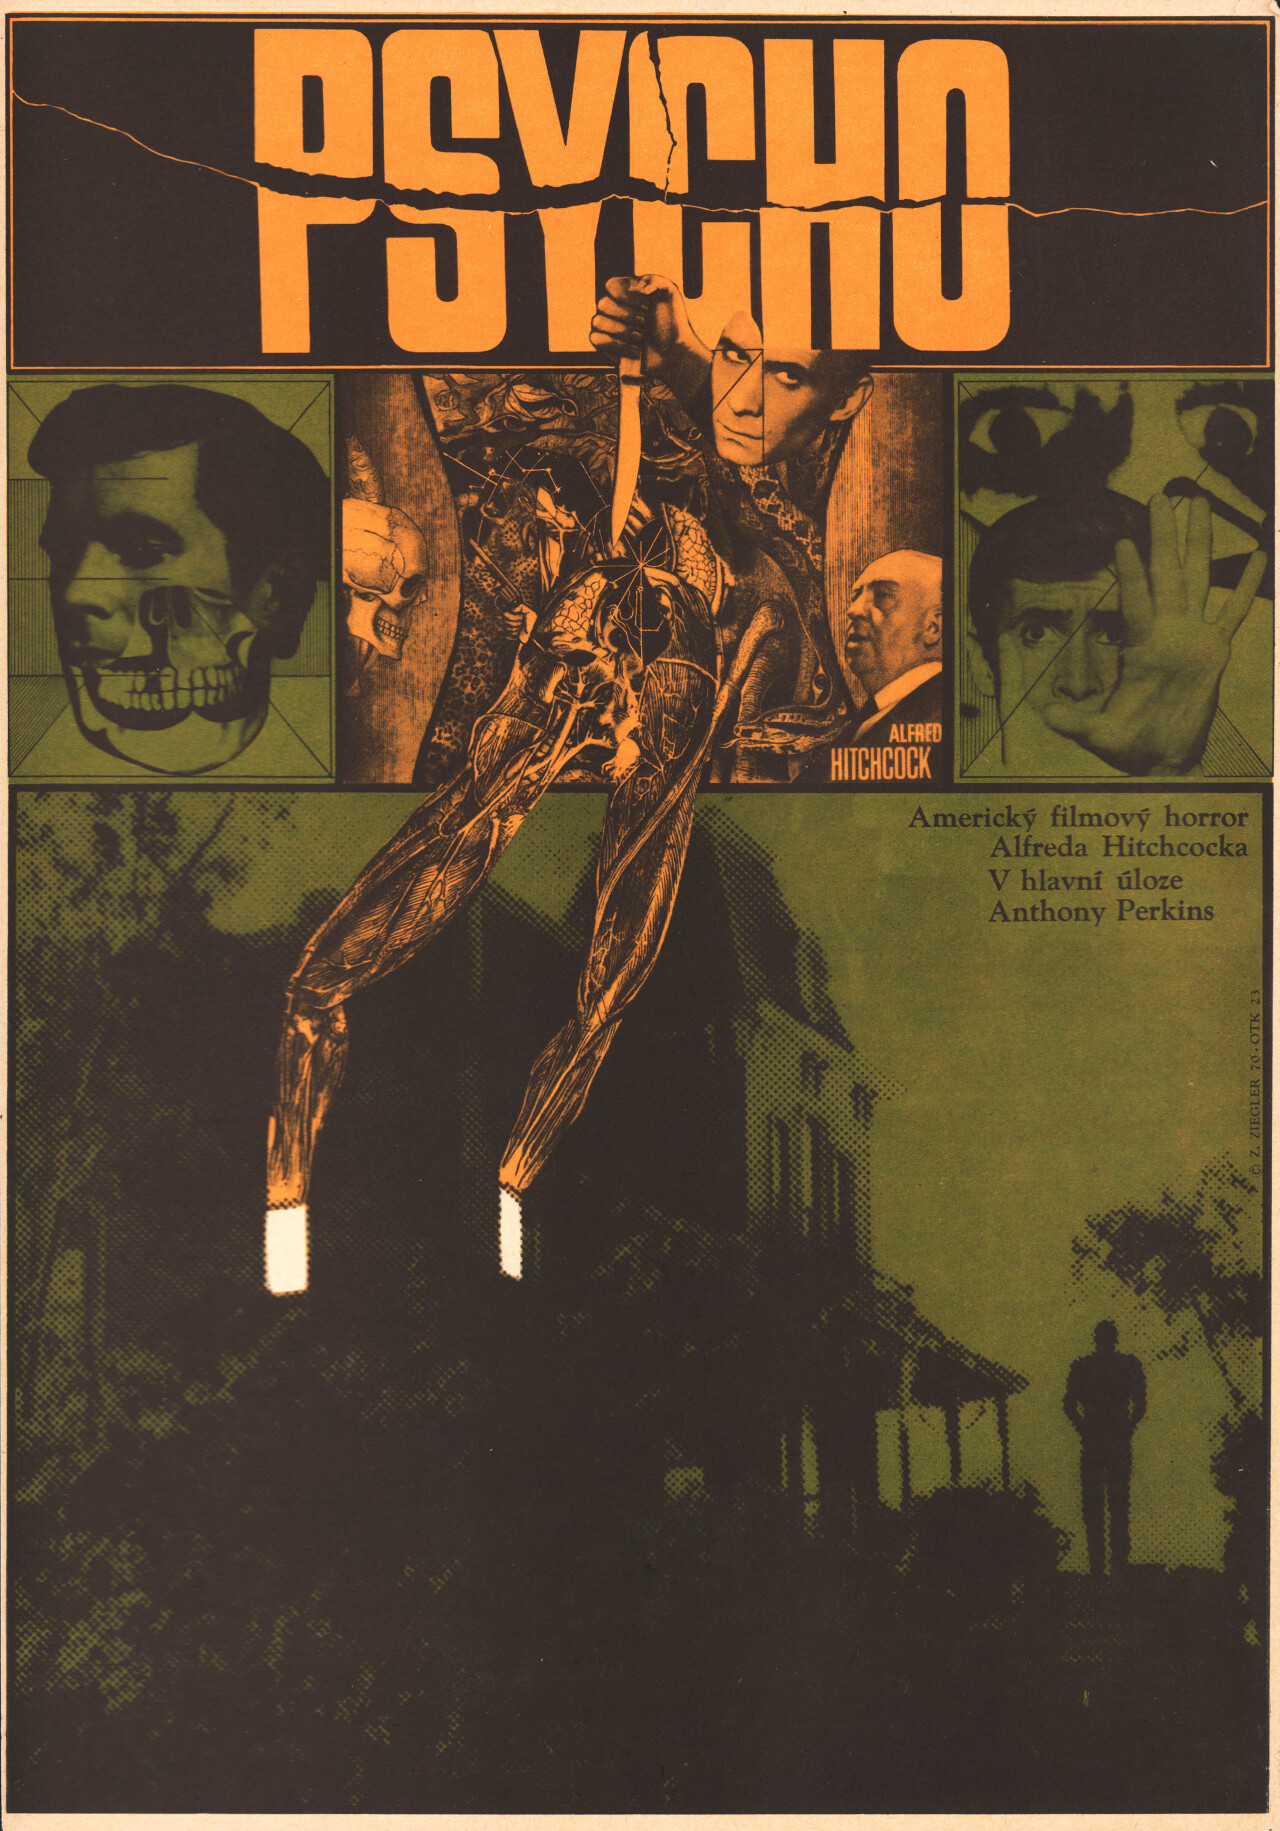 Психо (Psycho, 1960), режиссёр Альфред Хичкок, чехословацкий постер к фильму, автор Зденек Циглер (ужасы, 1970 год)